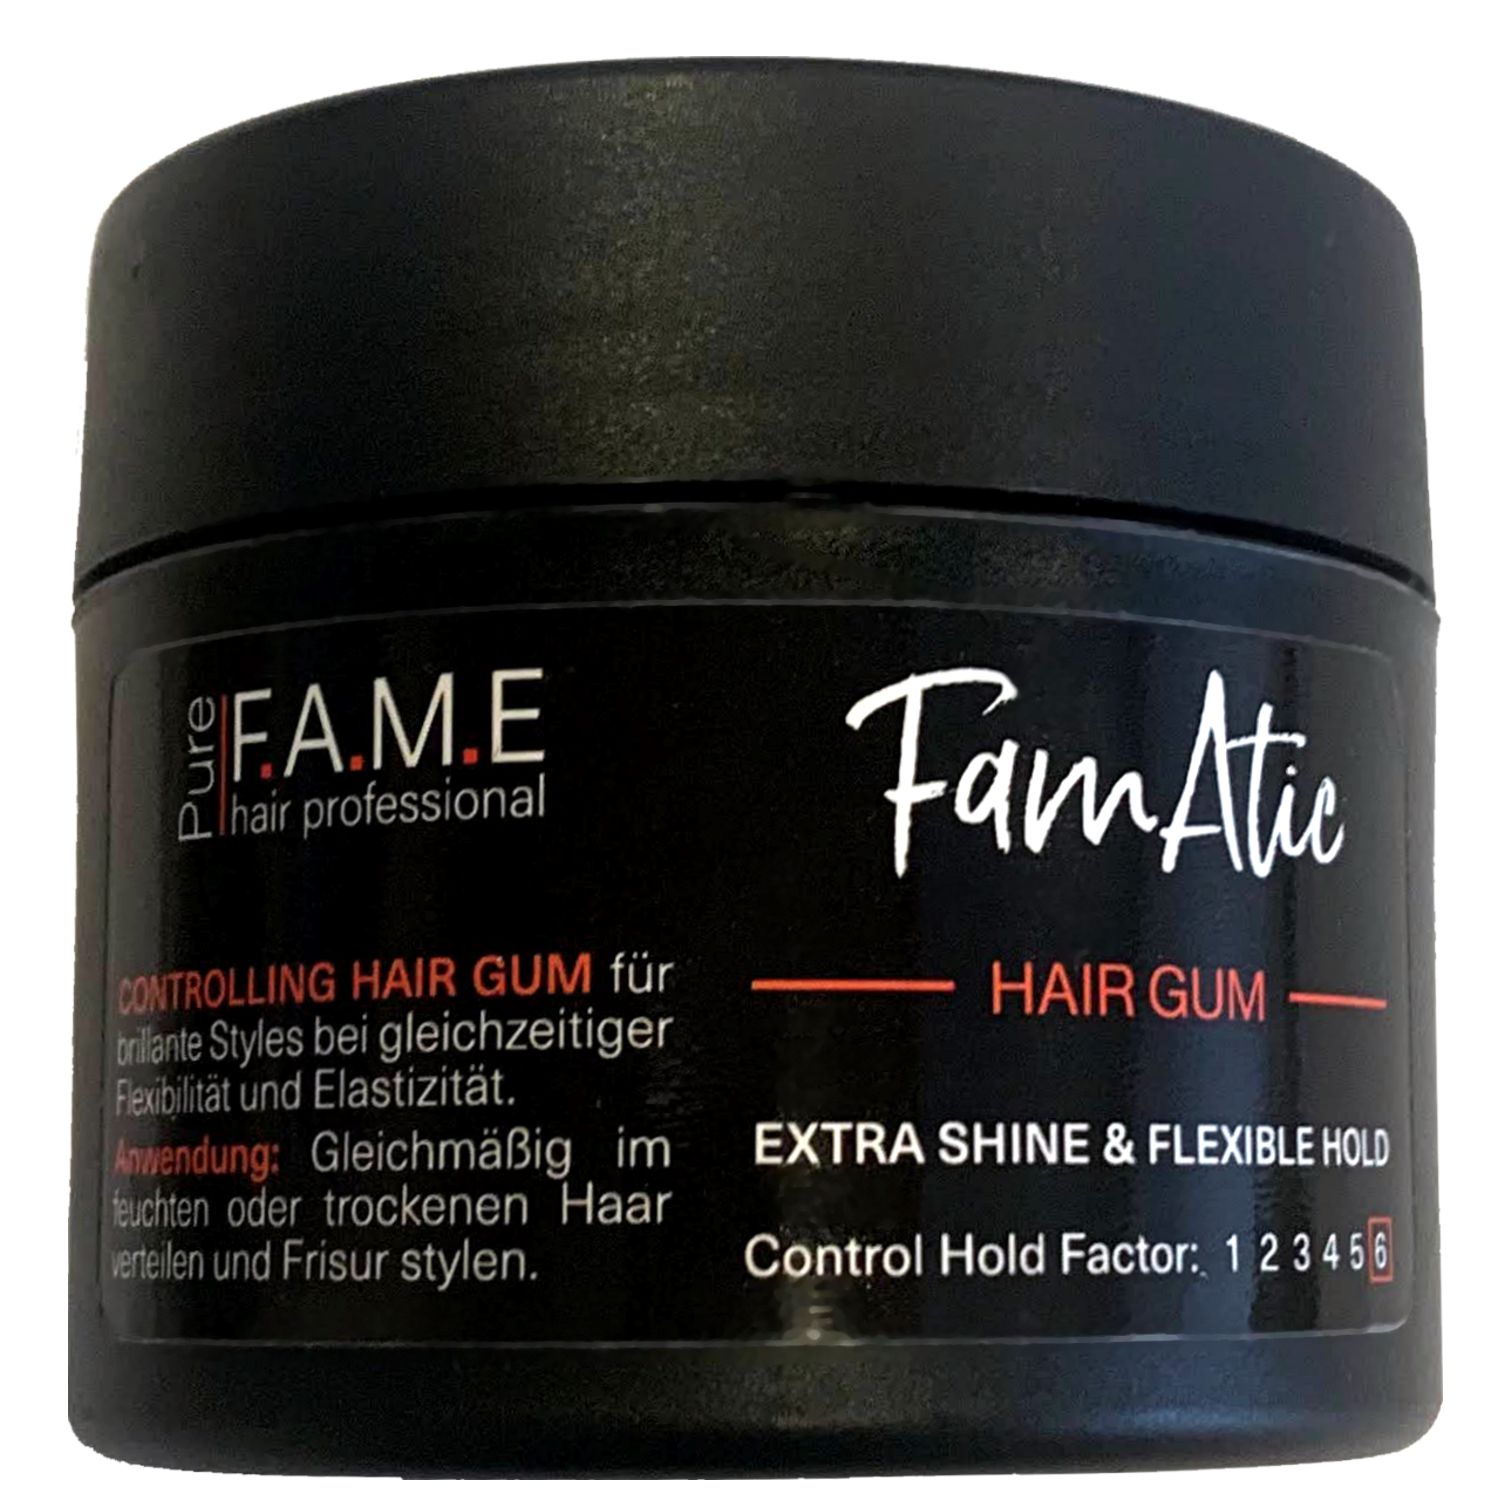 PURE FAME Volume Hair Gum 100 ml